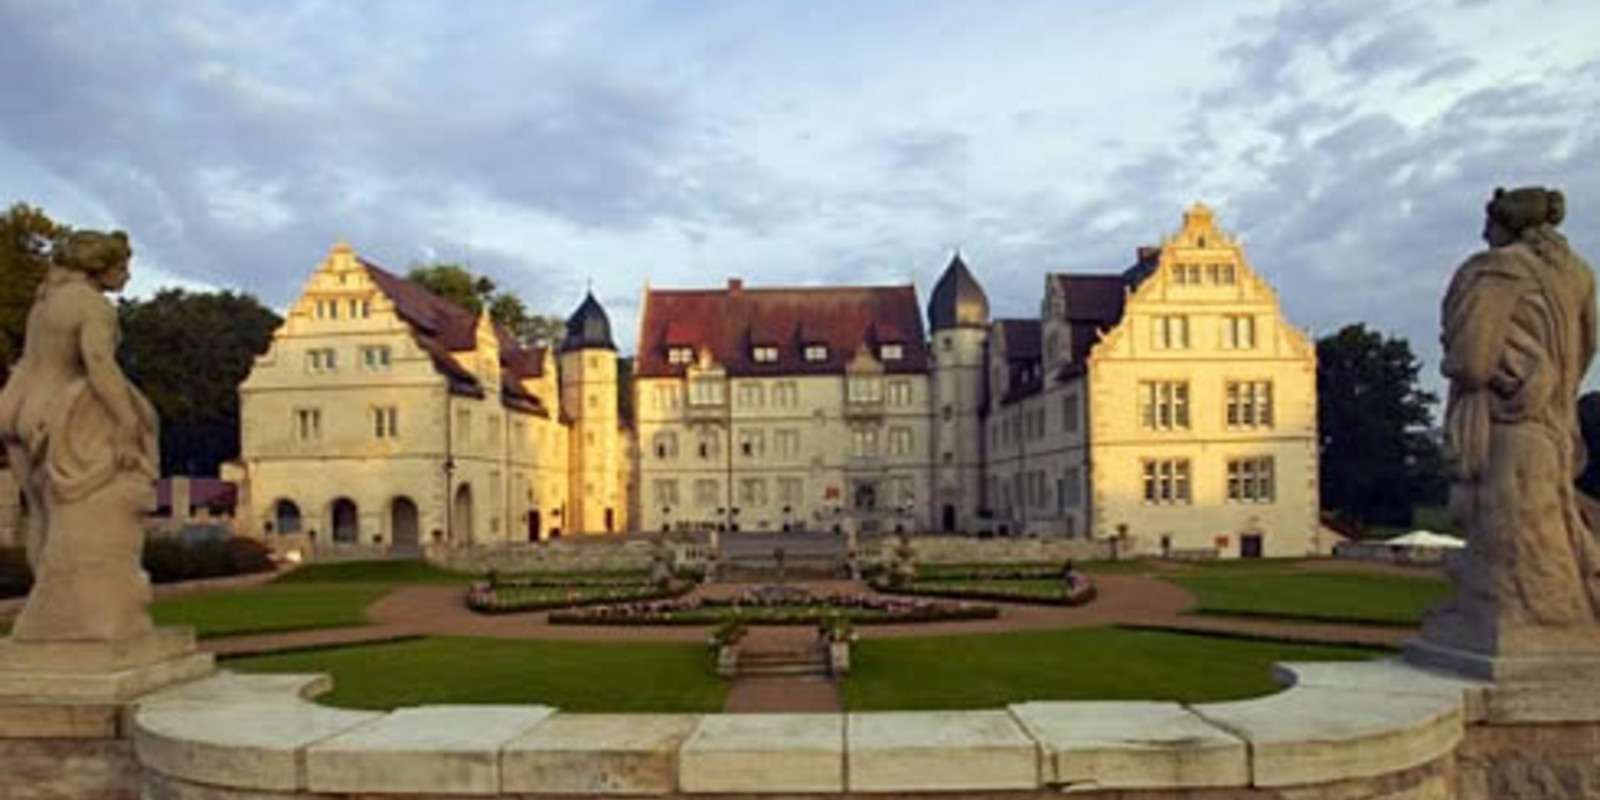 Gewinnen Sie ein Wochenende im Schlosshotel Münchhausen